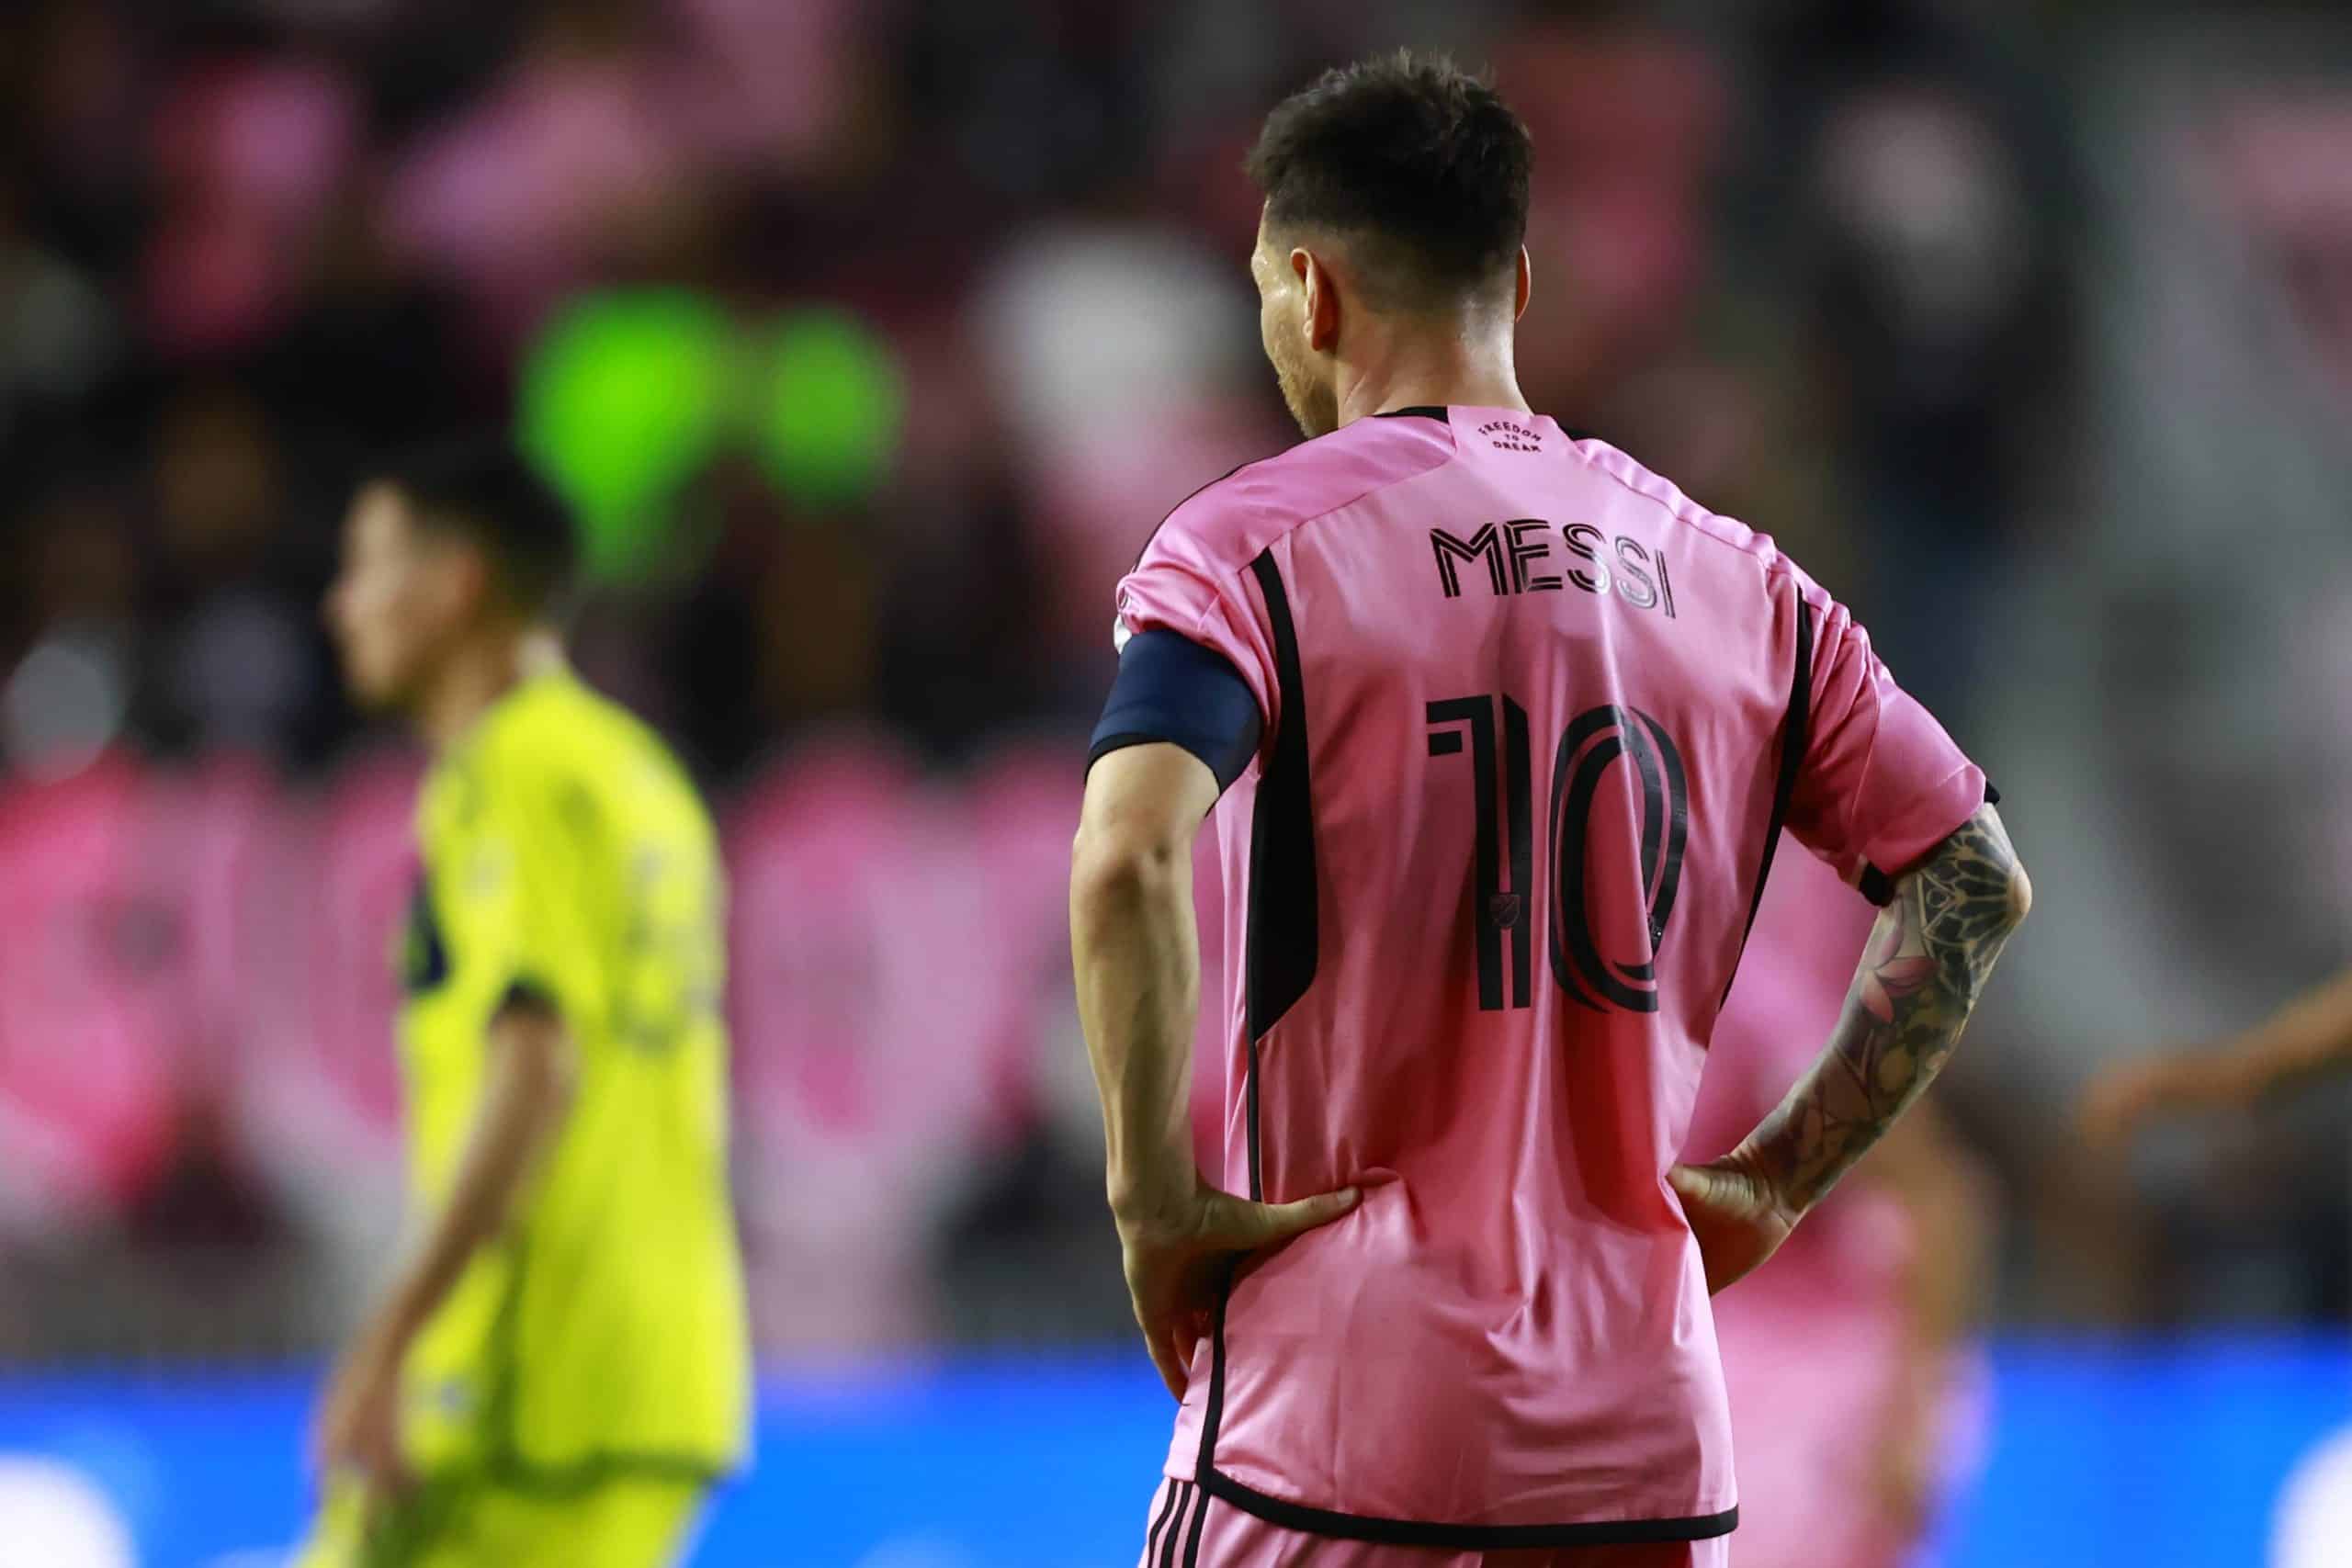 - Lionel Messi fora dos próximos jogos da Seleção Argentina devido a lesão no tendão